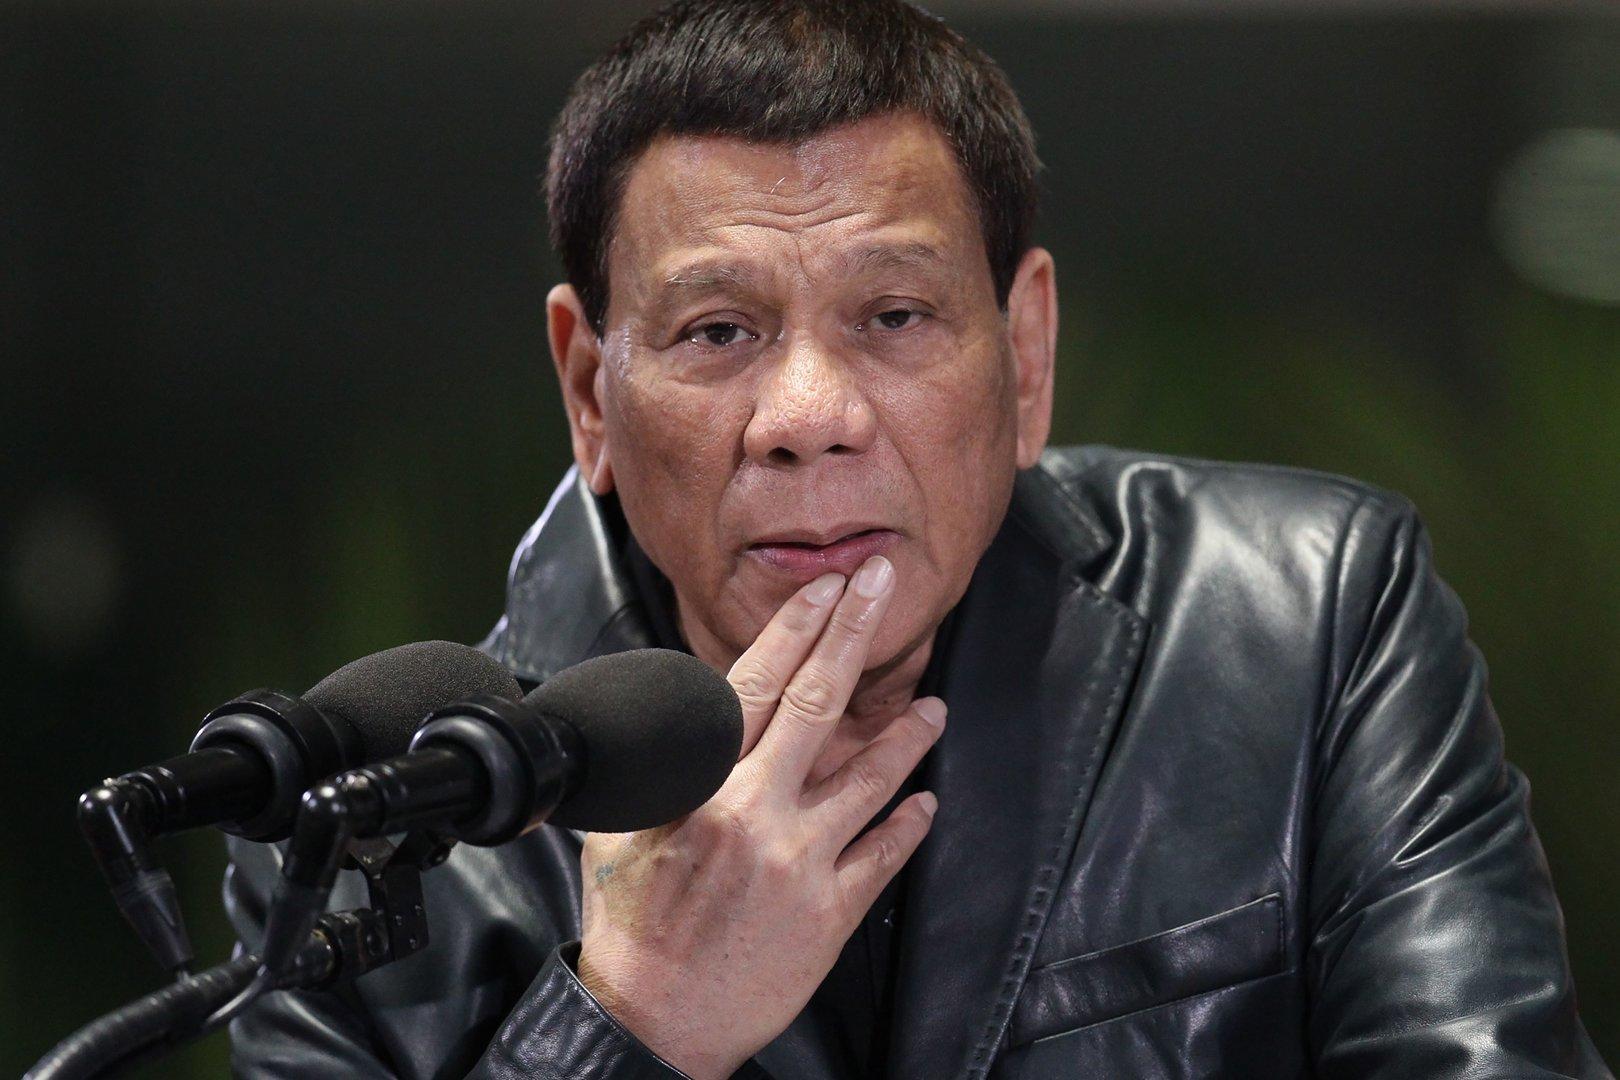 Philippinischer Präsident Duterte drängte Frauen zu Kuss